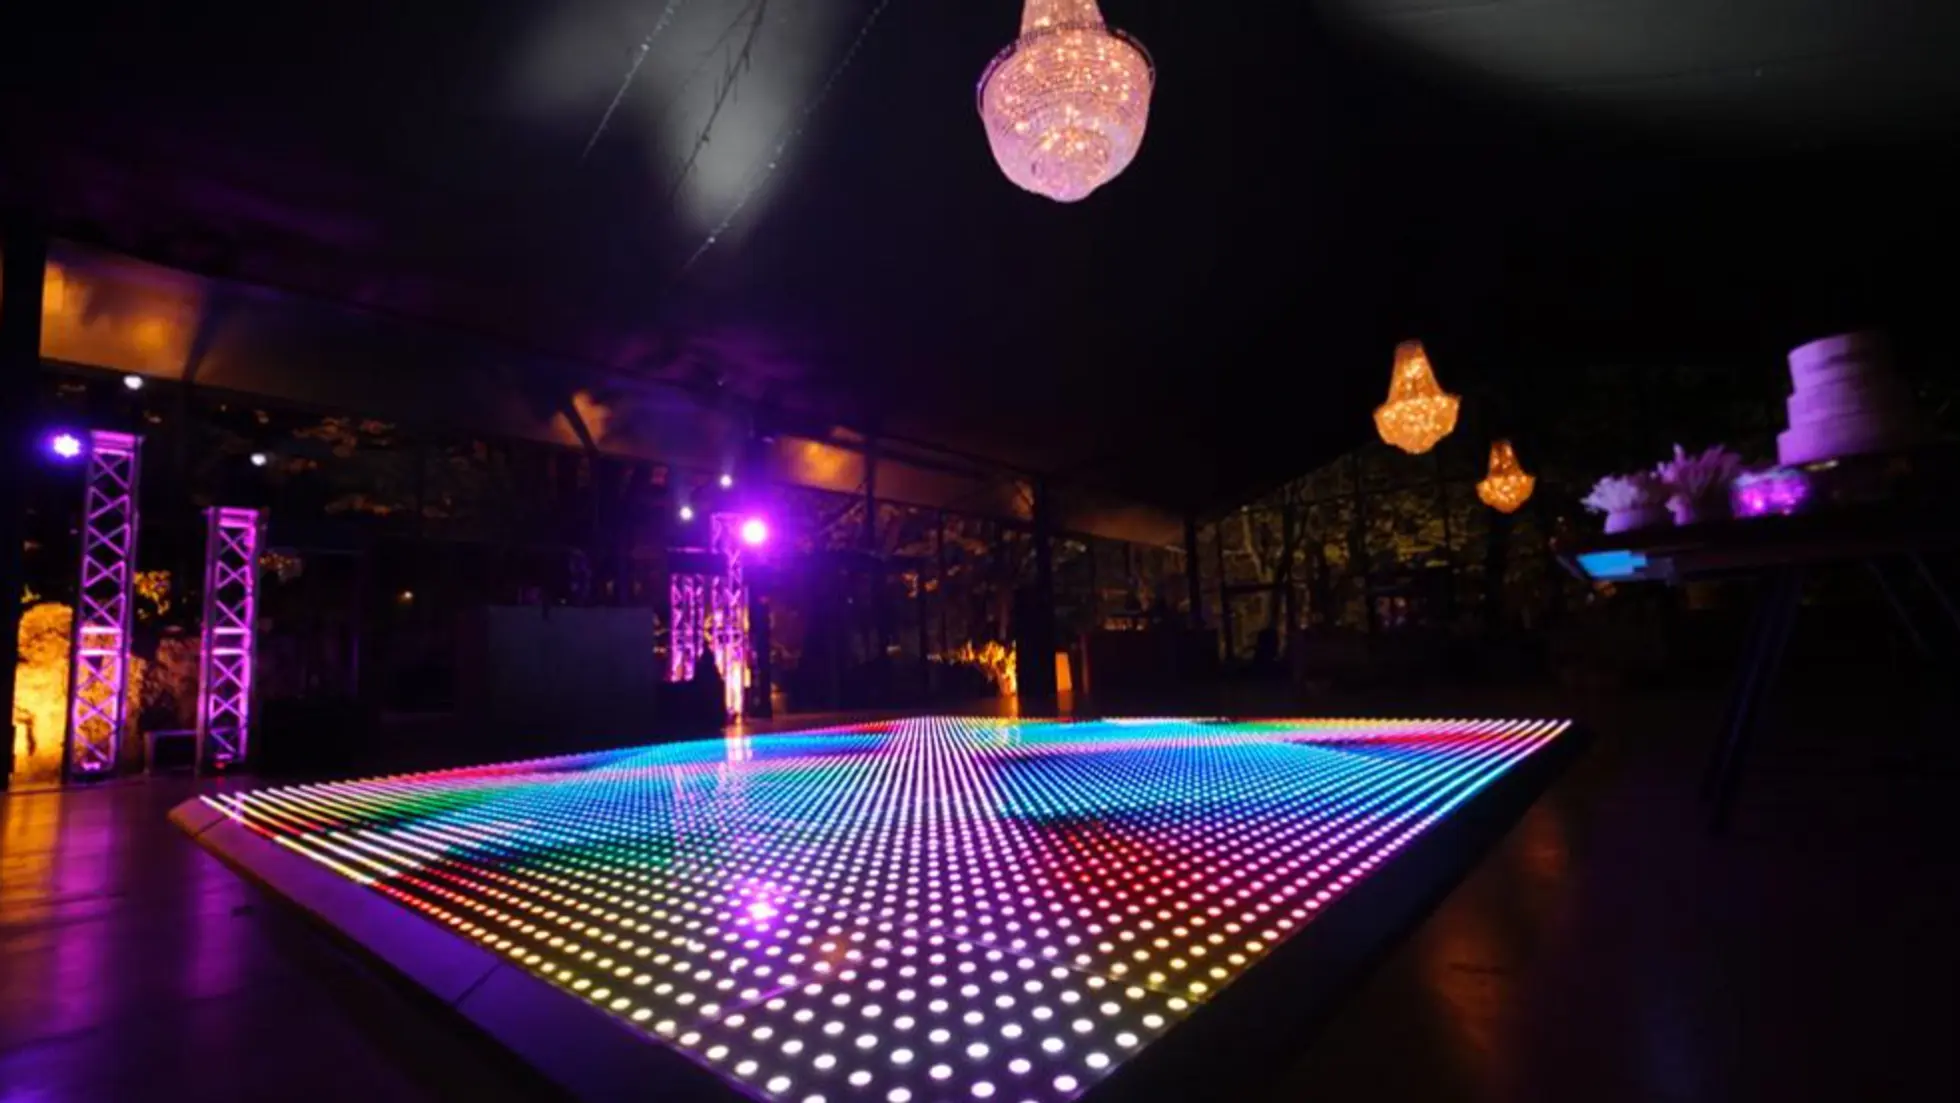 The Jo Manji LED Digital Dance Floor